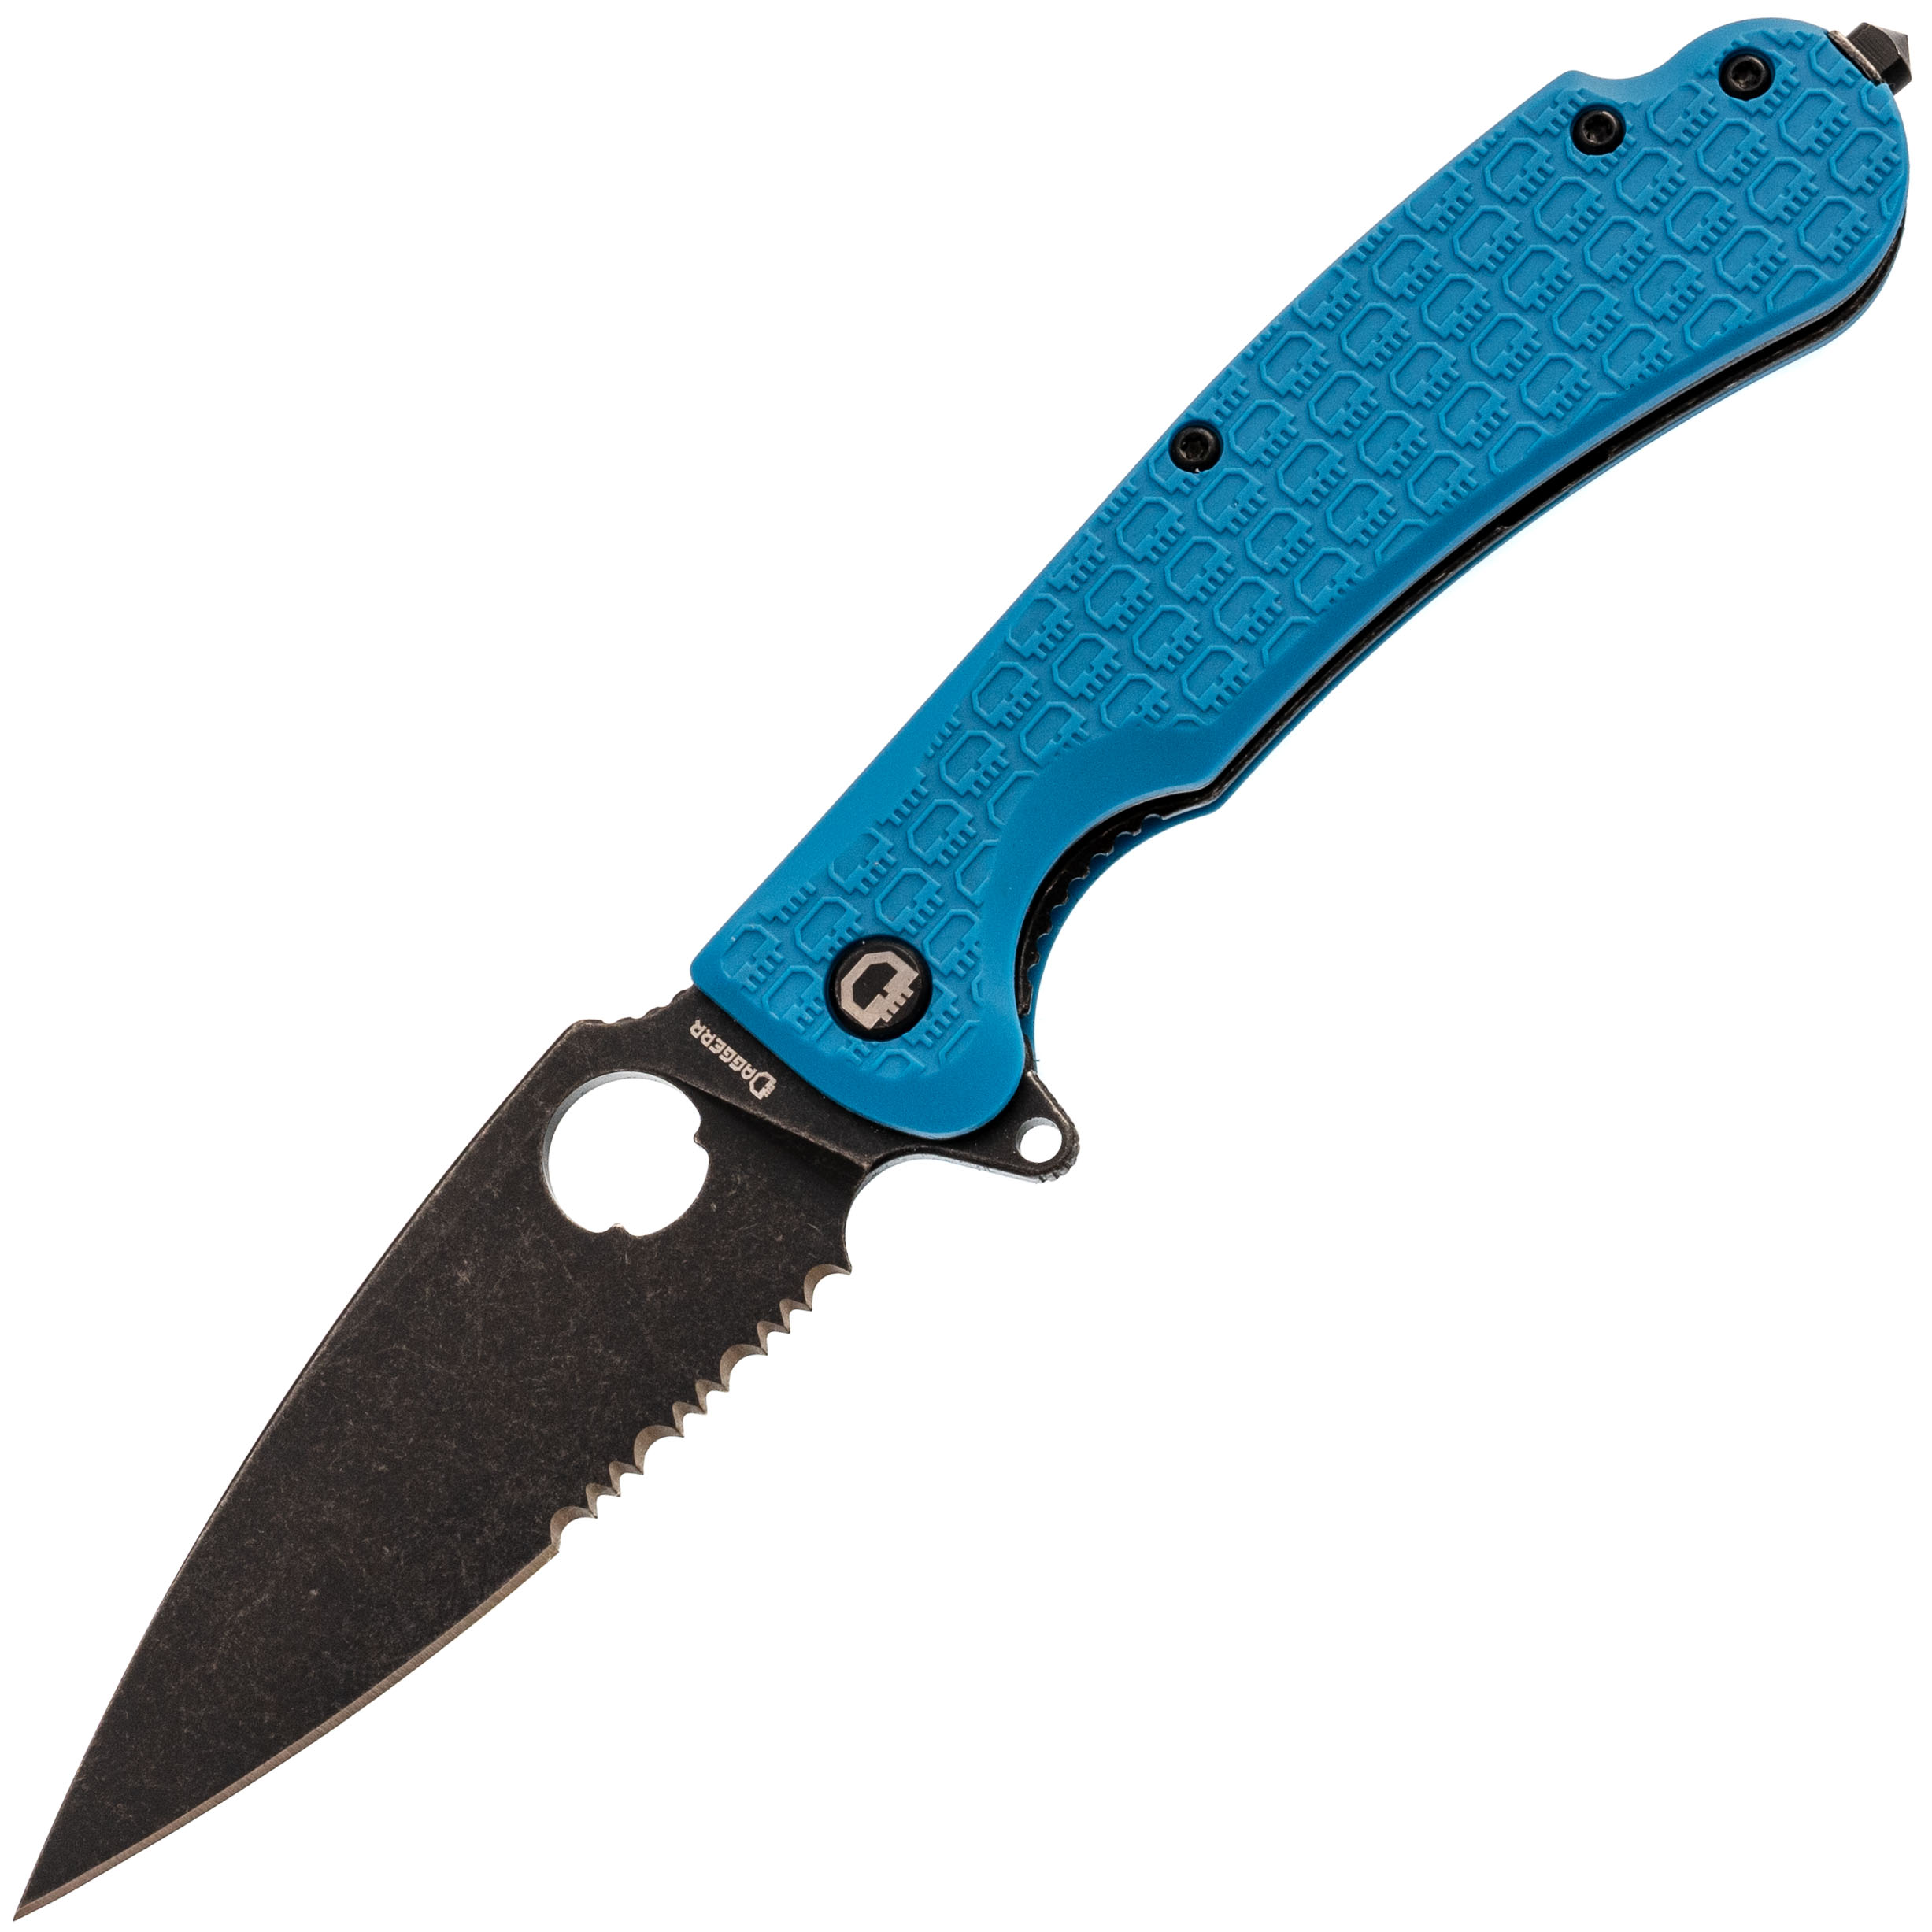 Складной нож Daggerr Resident Blue BW Serrated, сталь 8Cr14MoV, рукоять FRN складной нож daggerr pelican limited edition